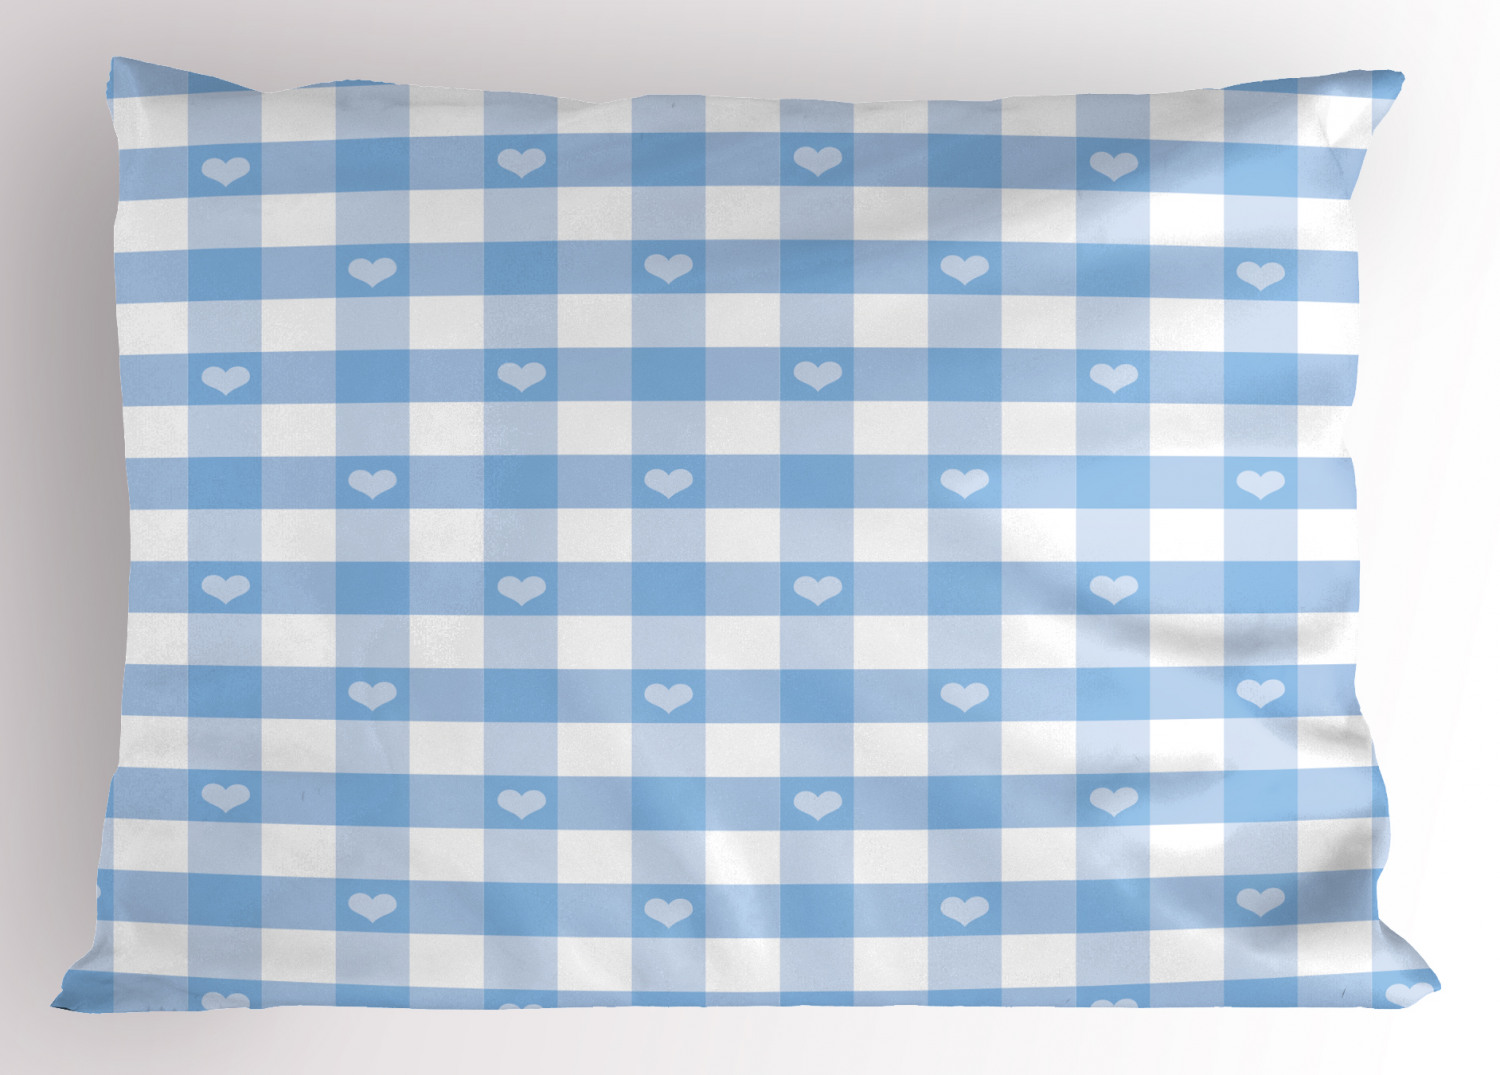 Details about   Retro Tea Party Pillow Sham Decorative Pillowcase 3 Sizes Bedroom Decoration 